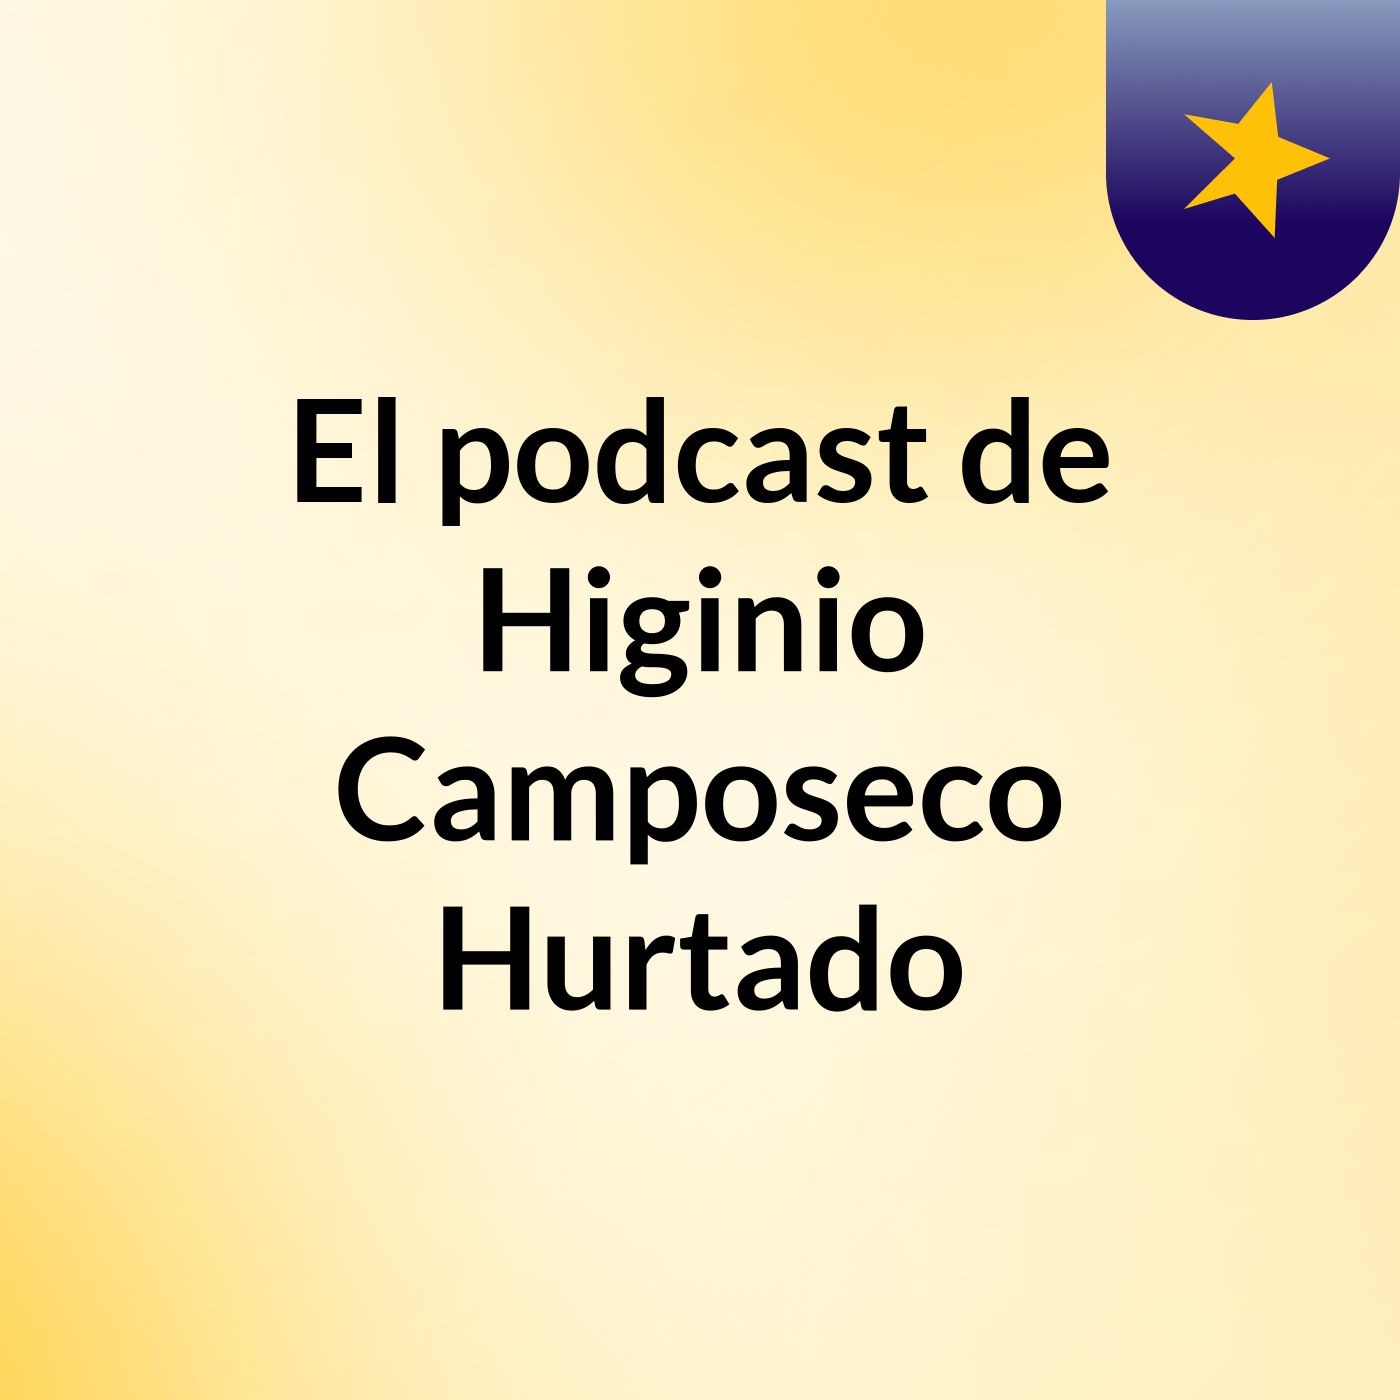 El podcast de Higinio Camposeco Hurtado